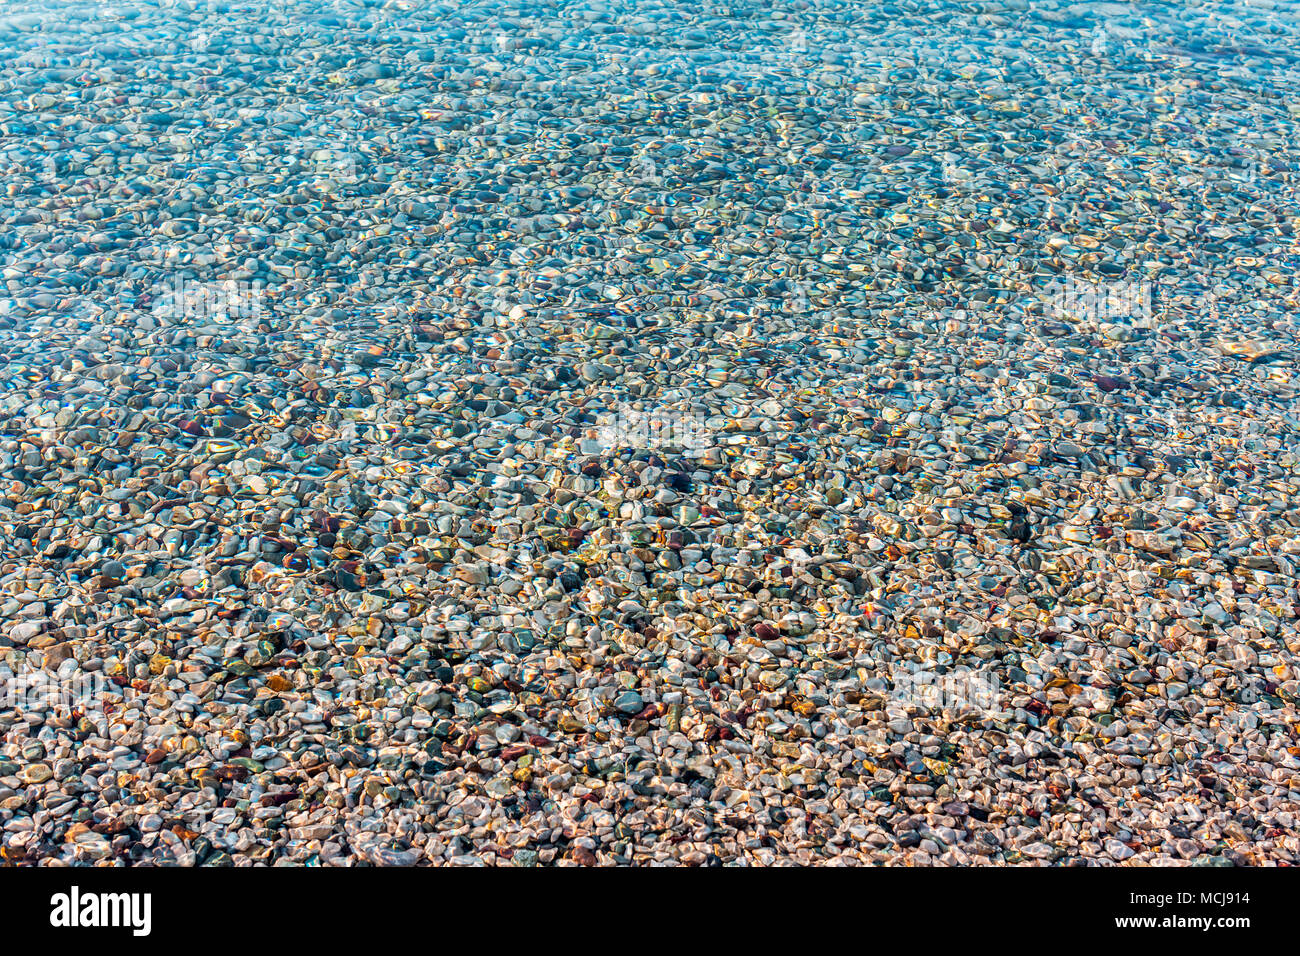 Arrière-plan de la mer de couleurs vives floue des pierres sous l'eau. La lumière du soleil irisé sur les pierres. L'eau de mer claire transparent Banque D'Images